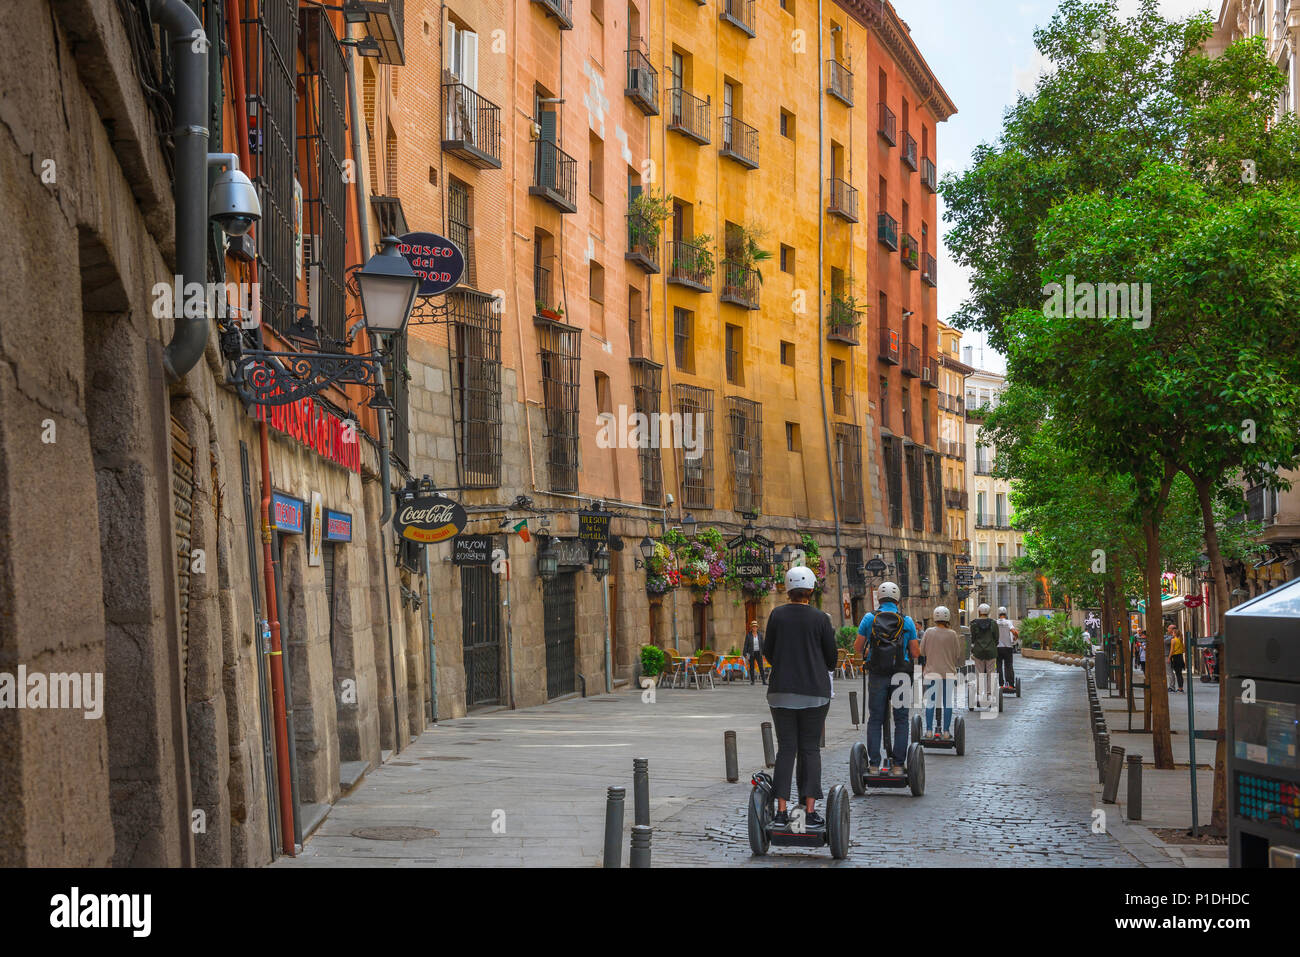 Segway city Europa, turisti su segways in Calle Cuchilleros prendere un tour della città vecchia di Madrid in Spagna. Foto Stock